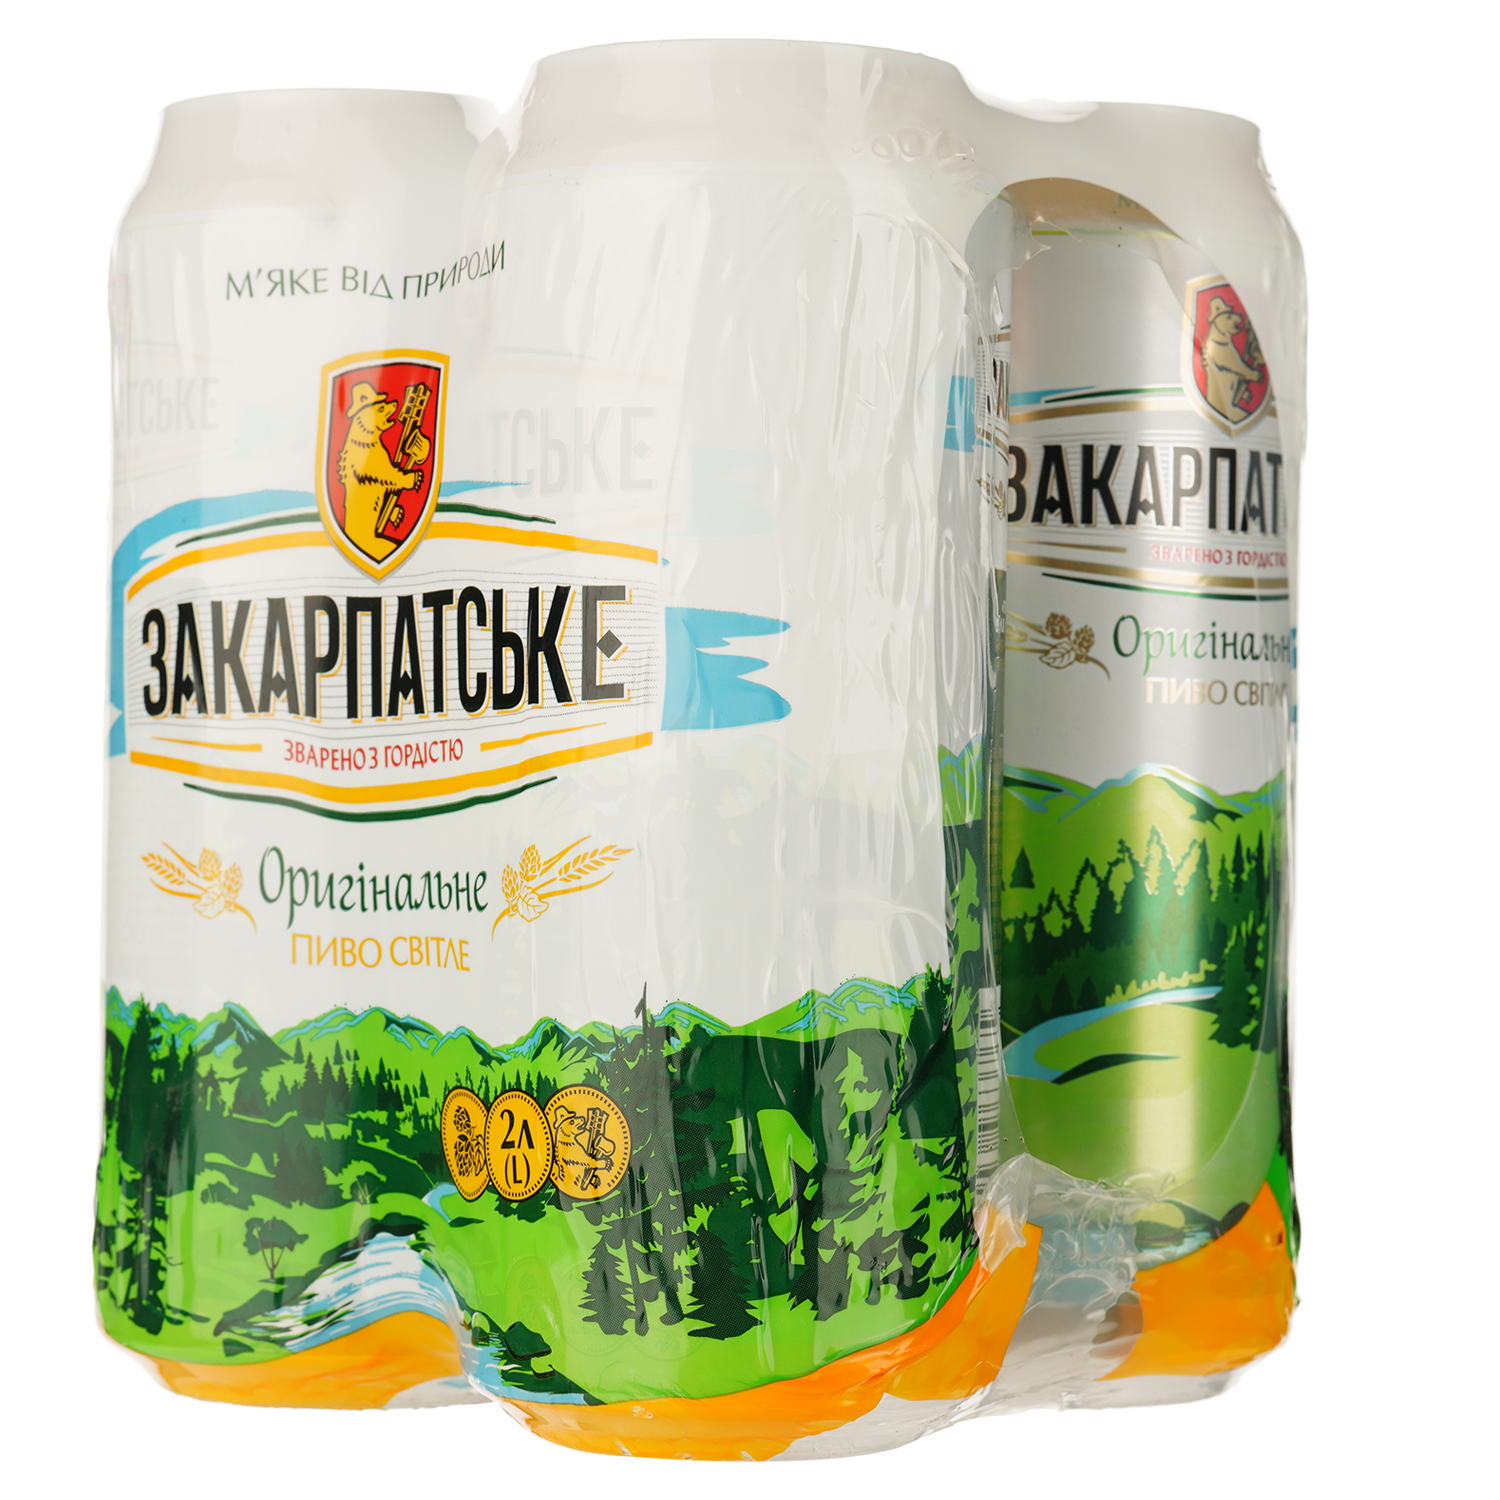 Пиво Перша приватна броварня Закарпатское, светлое, фильтрованное 4.1% ж/б 4 шт. по 0,5 л (825769) - фото 2